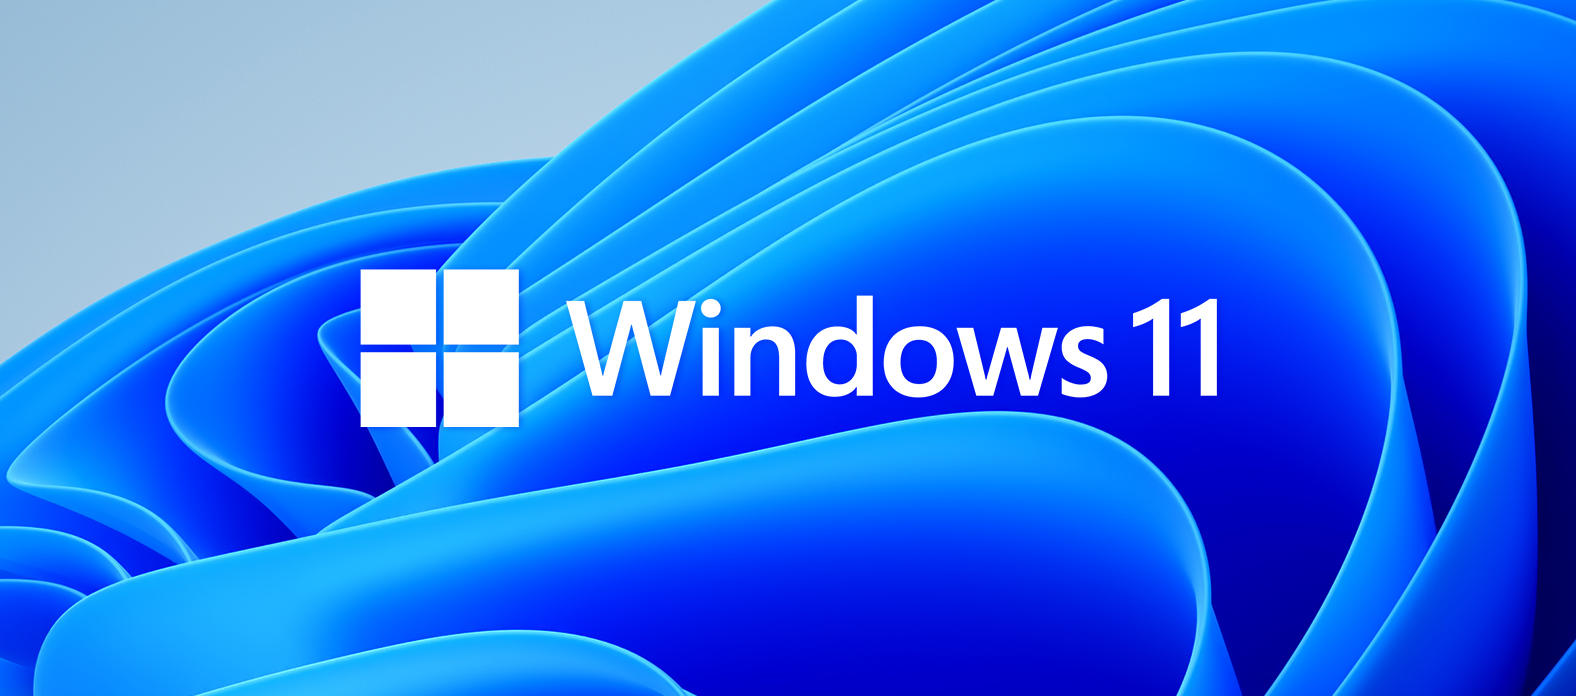 Mach dich bereit für Windows 11!